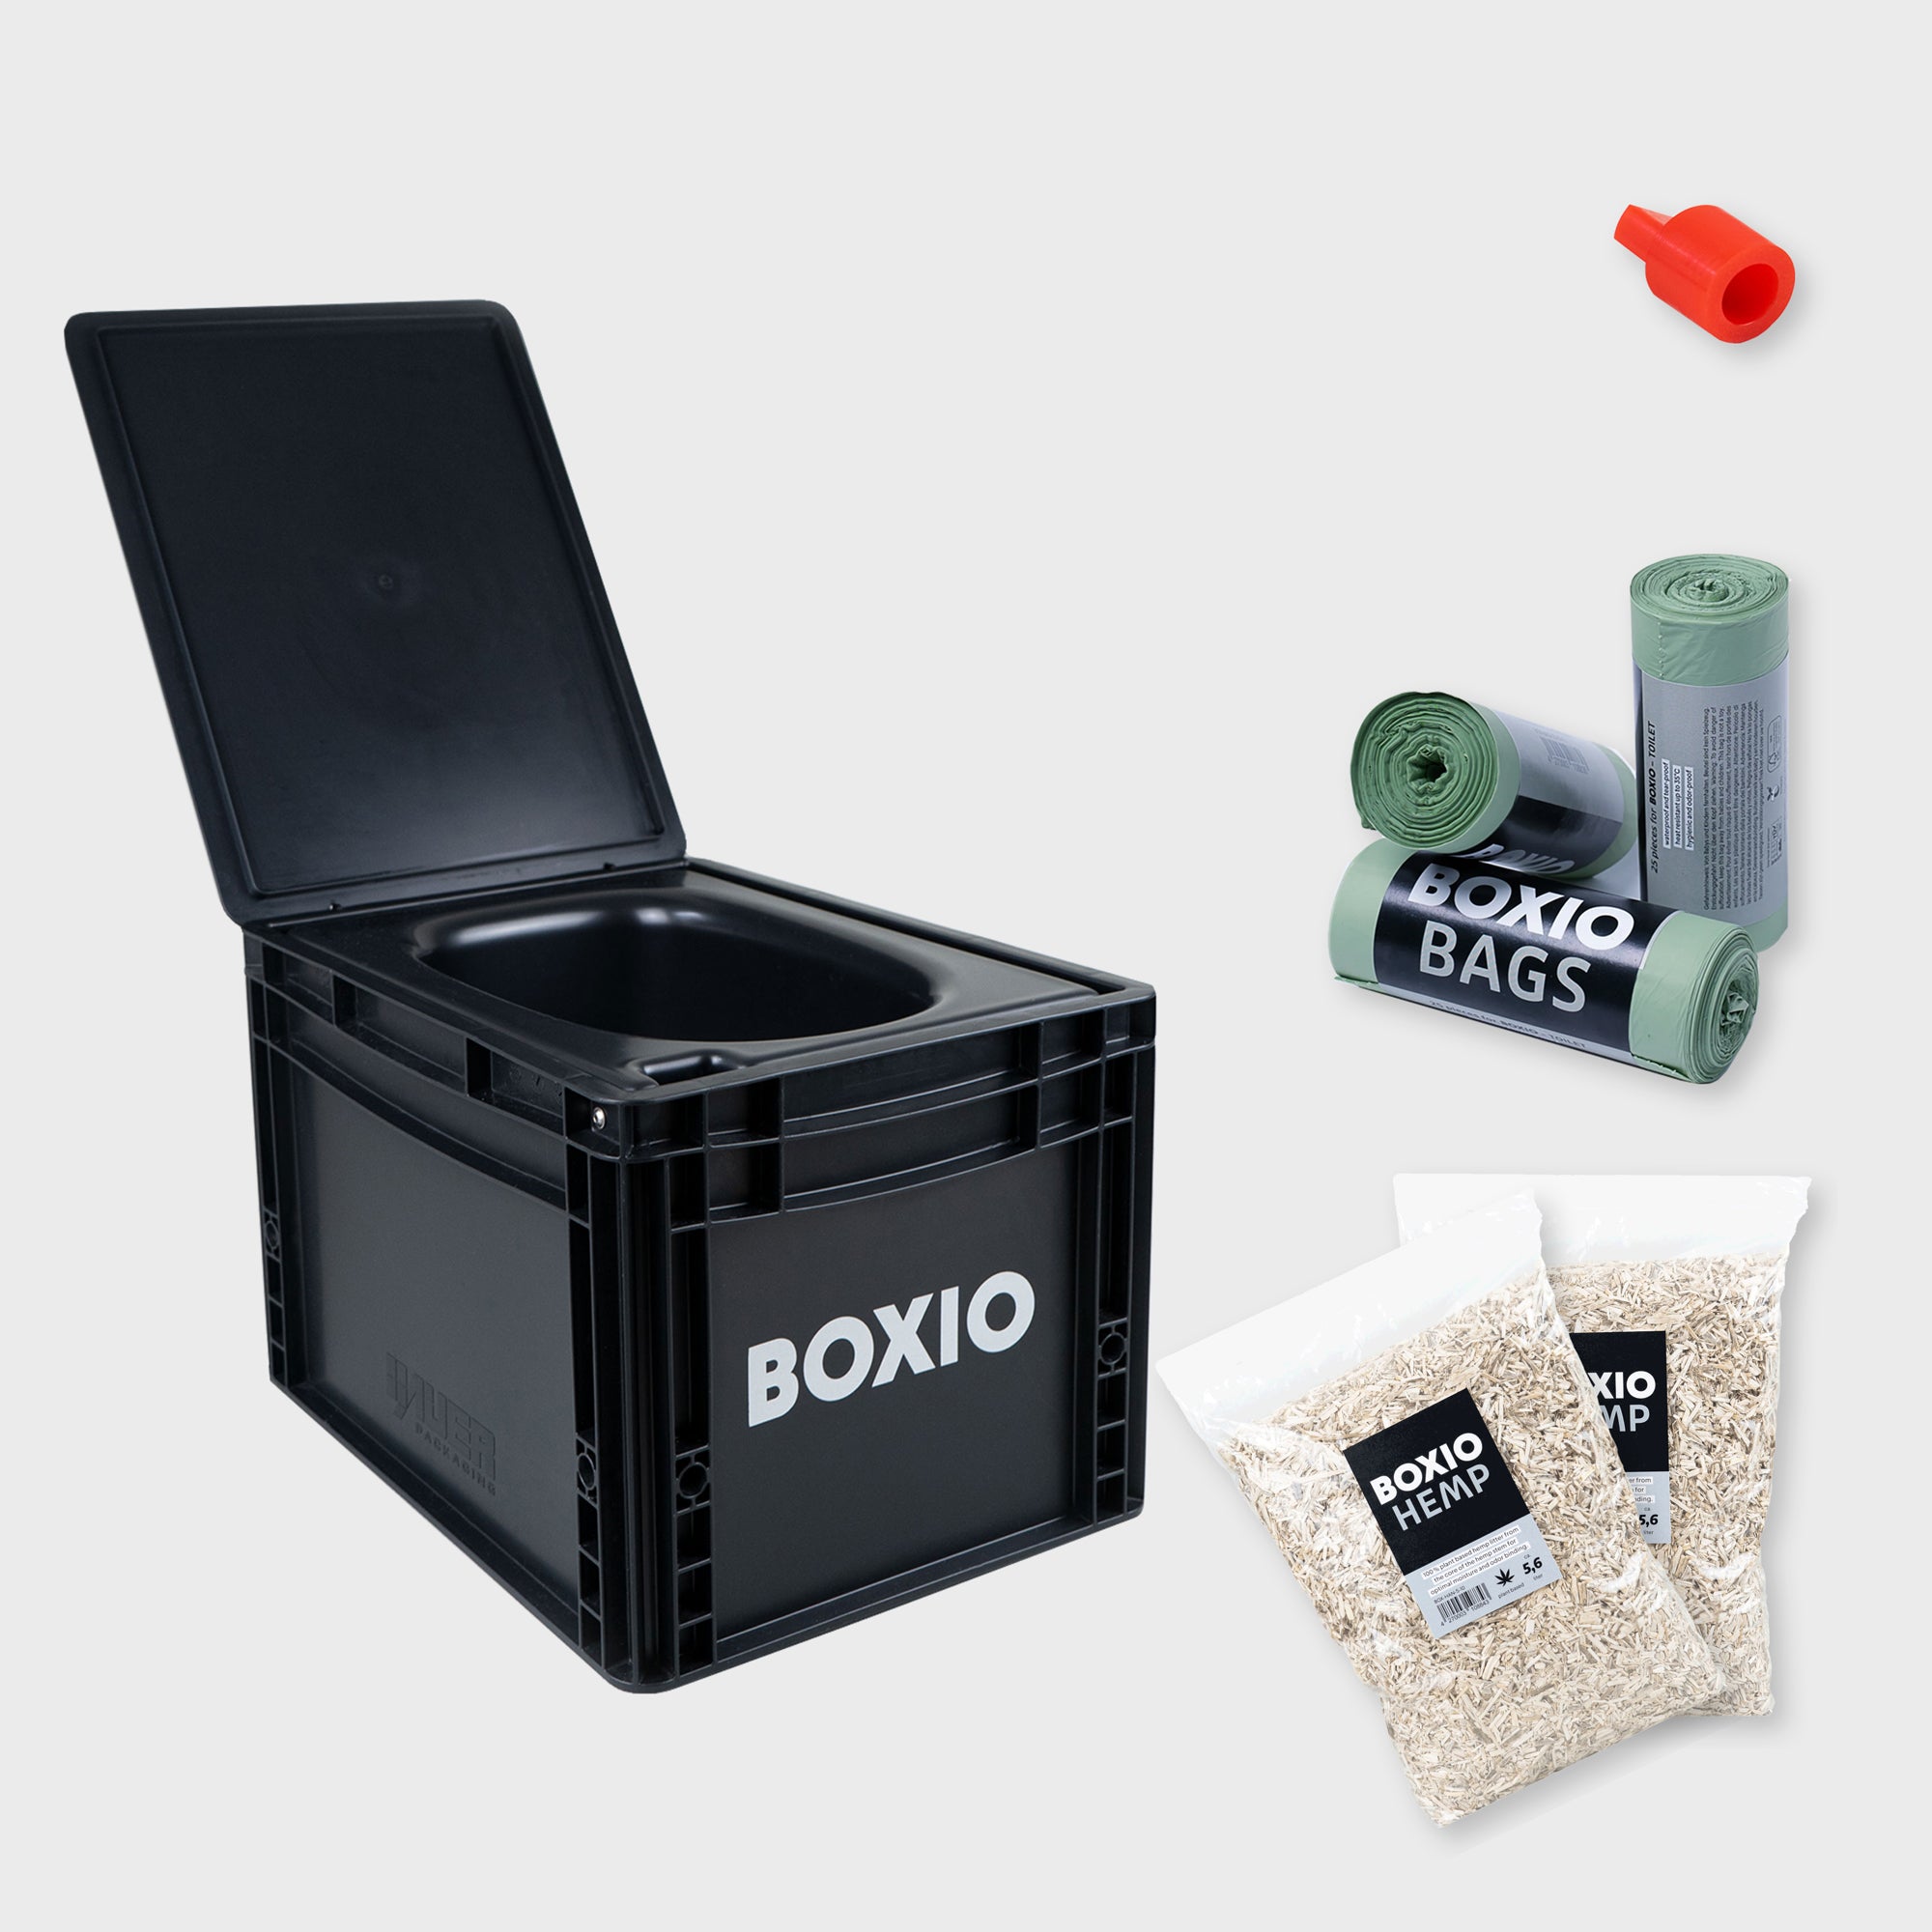 BOXIO - TOILET Plus composting toilet starter kit